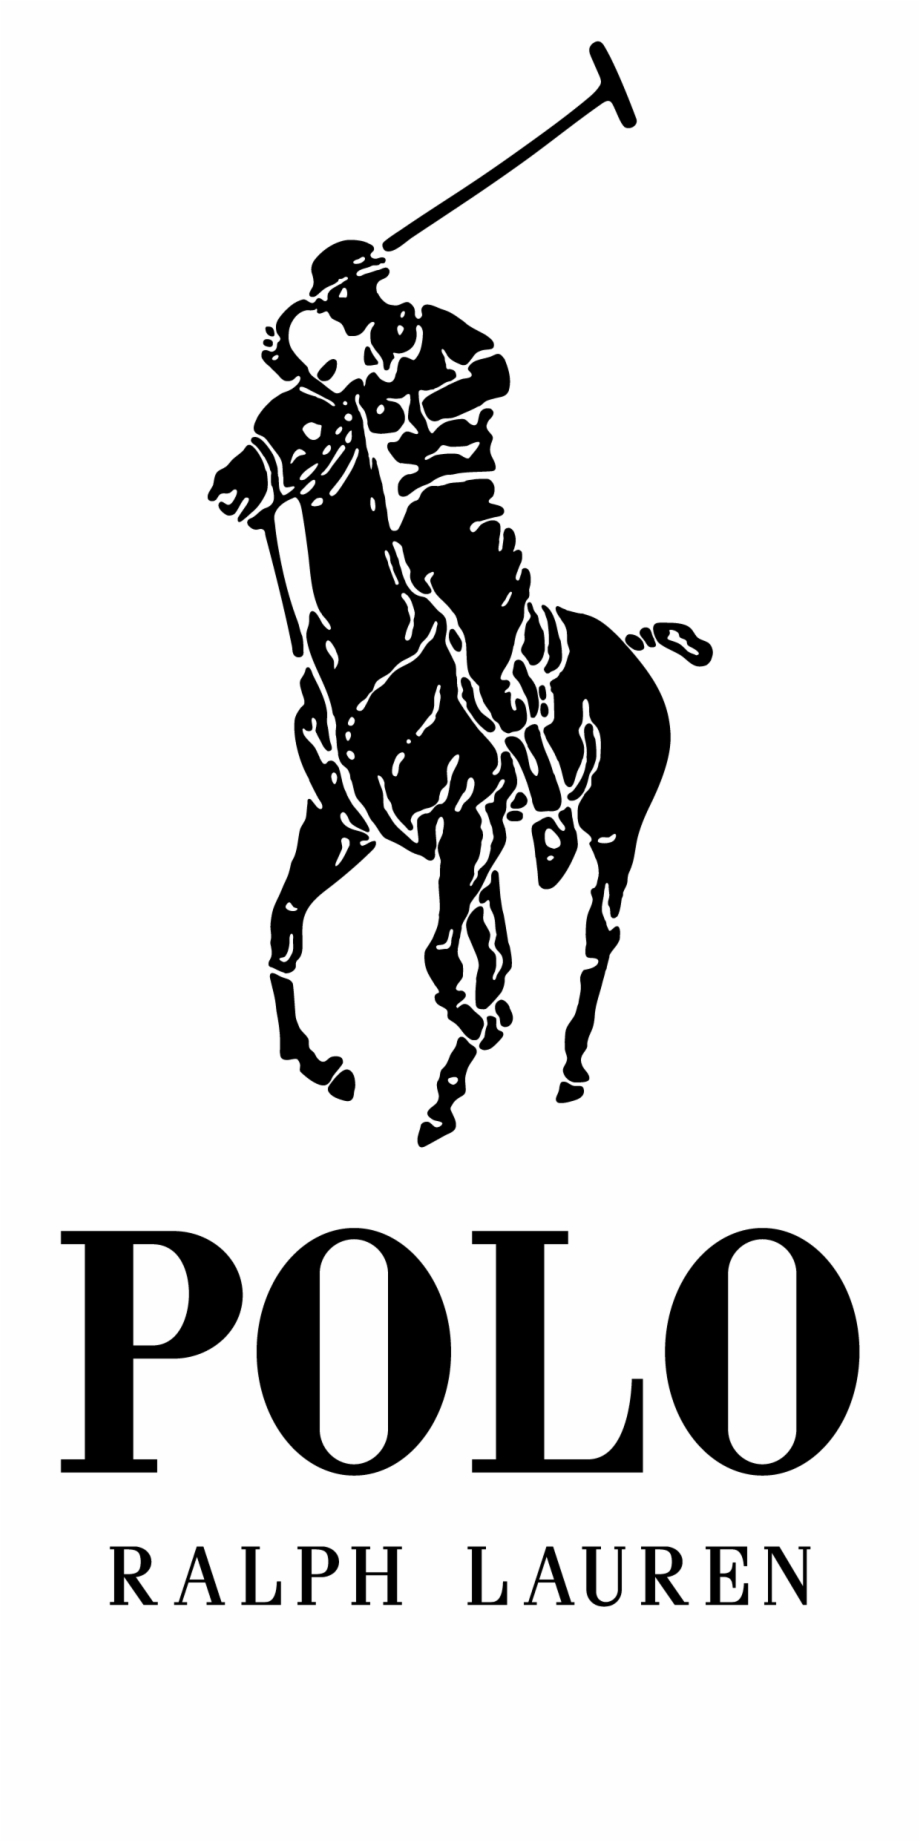 polo ralph lauren logo png
